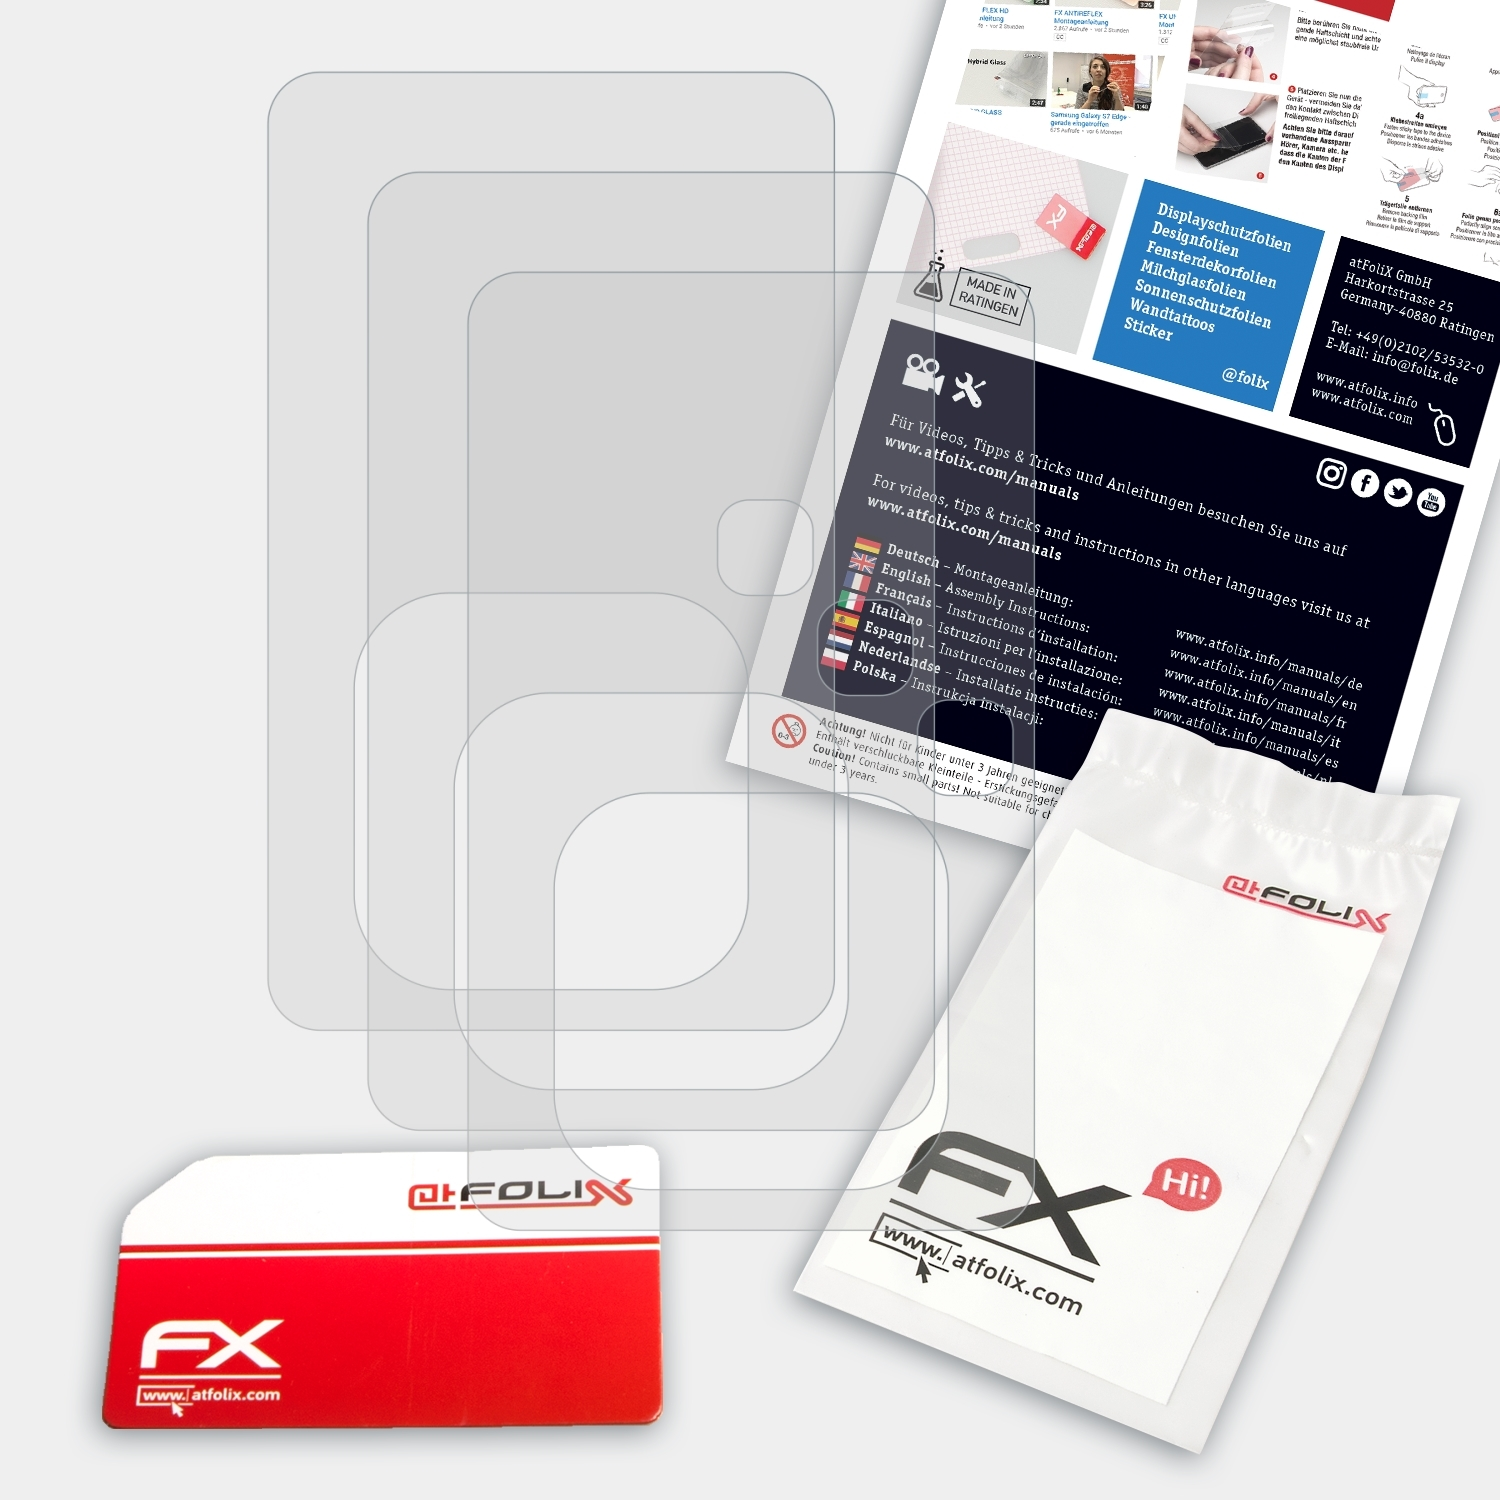 ATFOLIX 3x Sansa Sandisk Displayschutz(für FX-Antireflex Clip+)